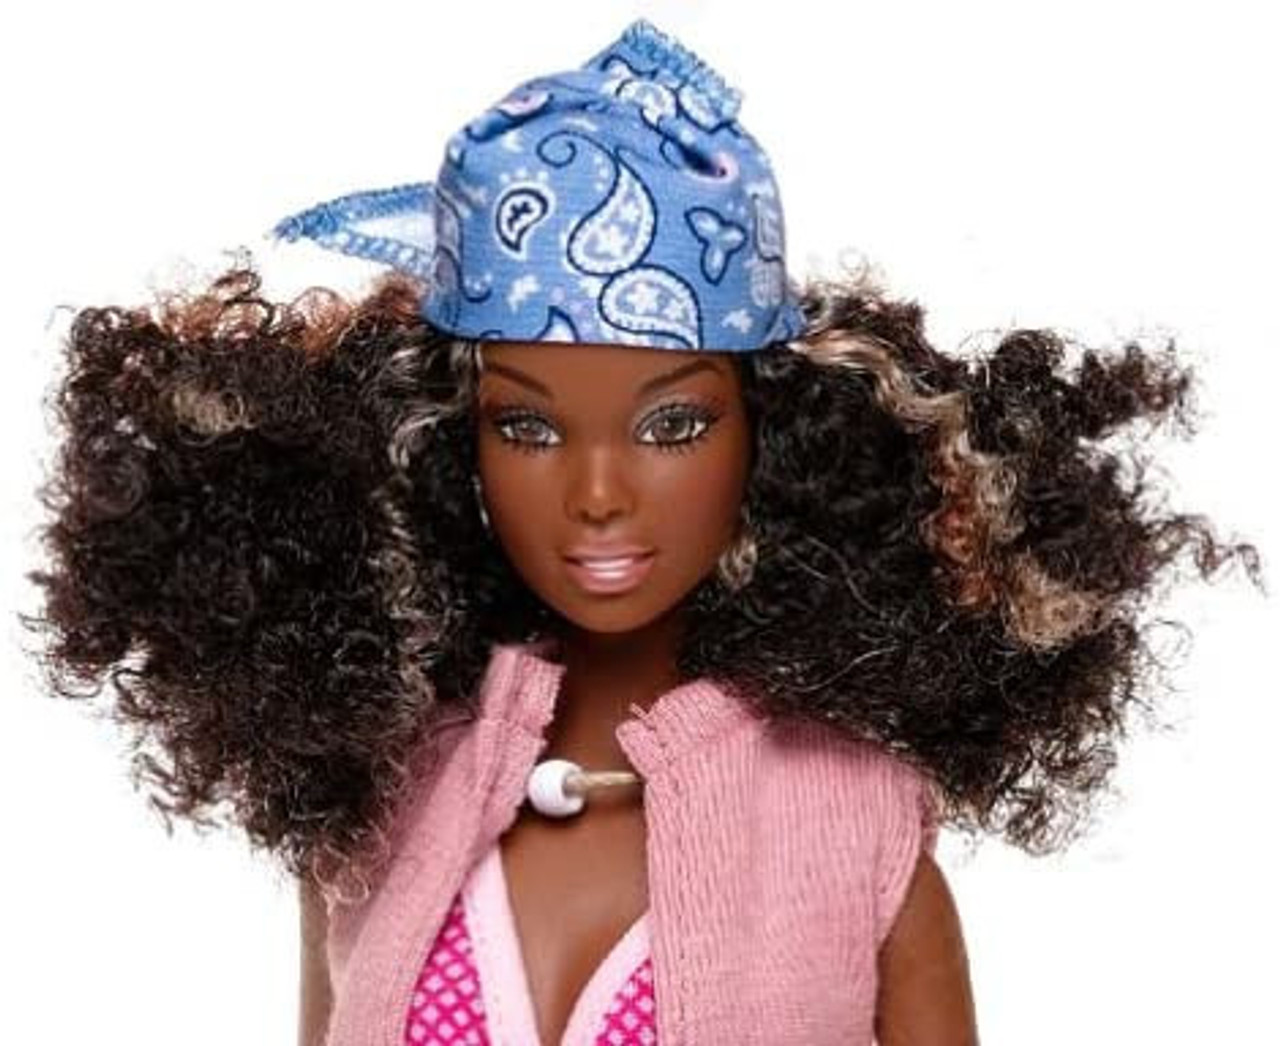 Barbie Girl : Black Toss - #C12992-Black - 889333286011